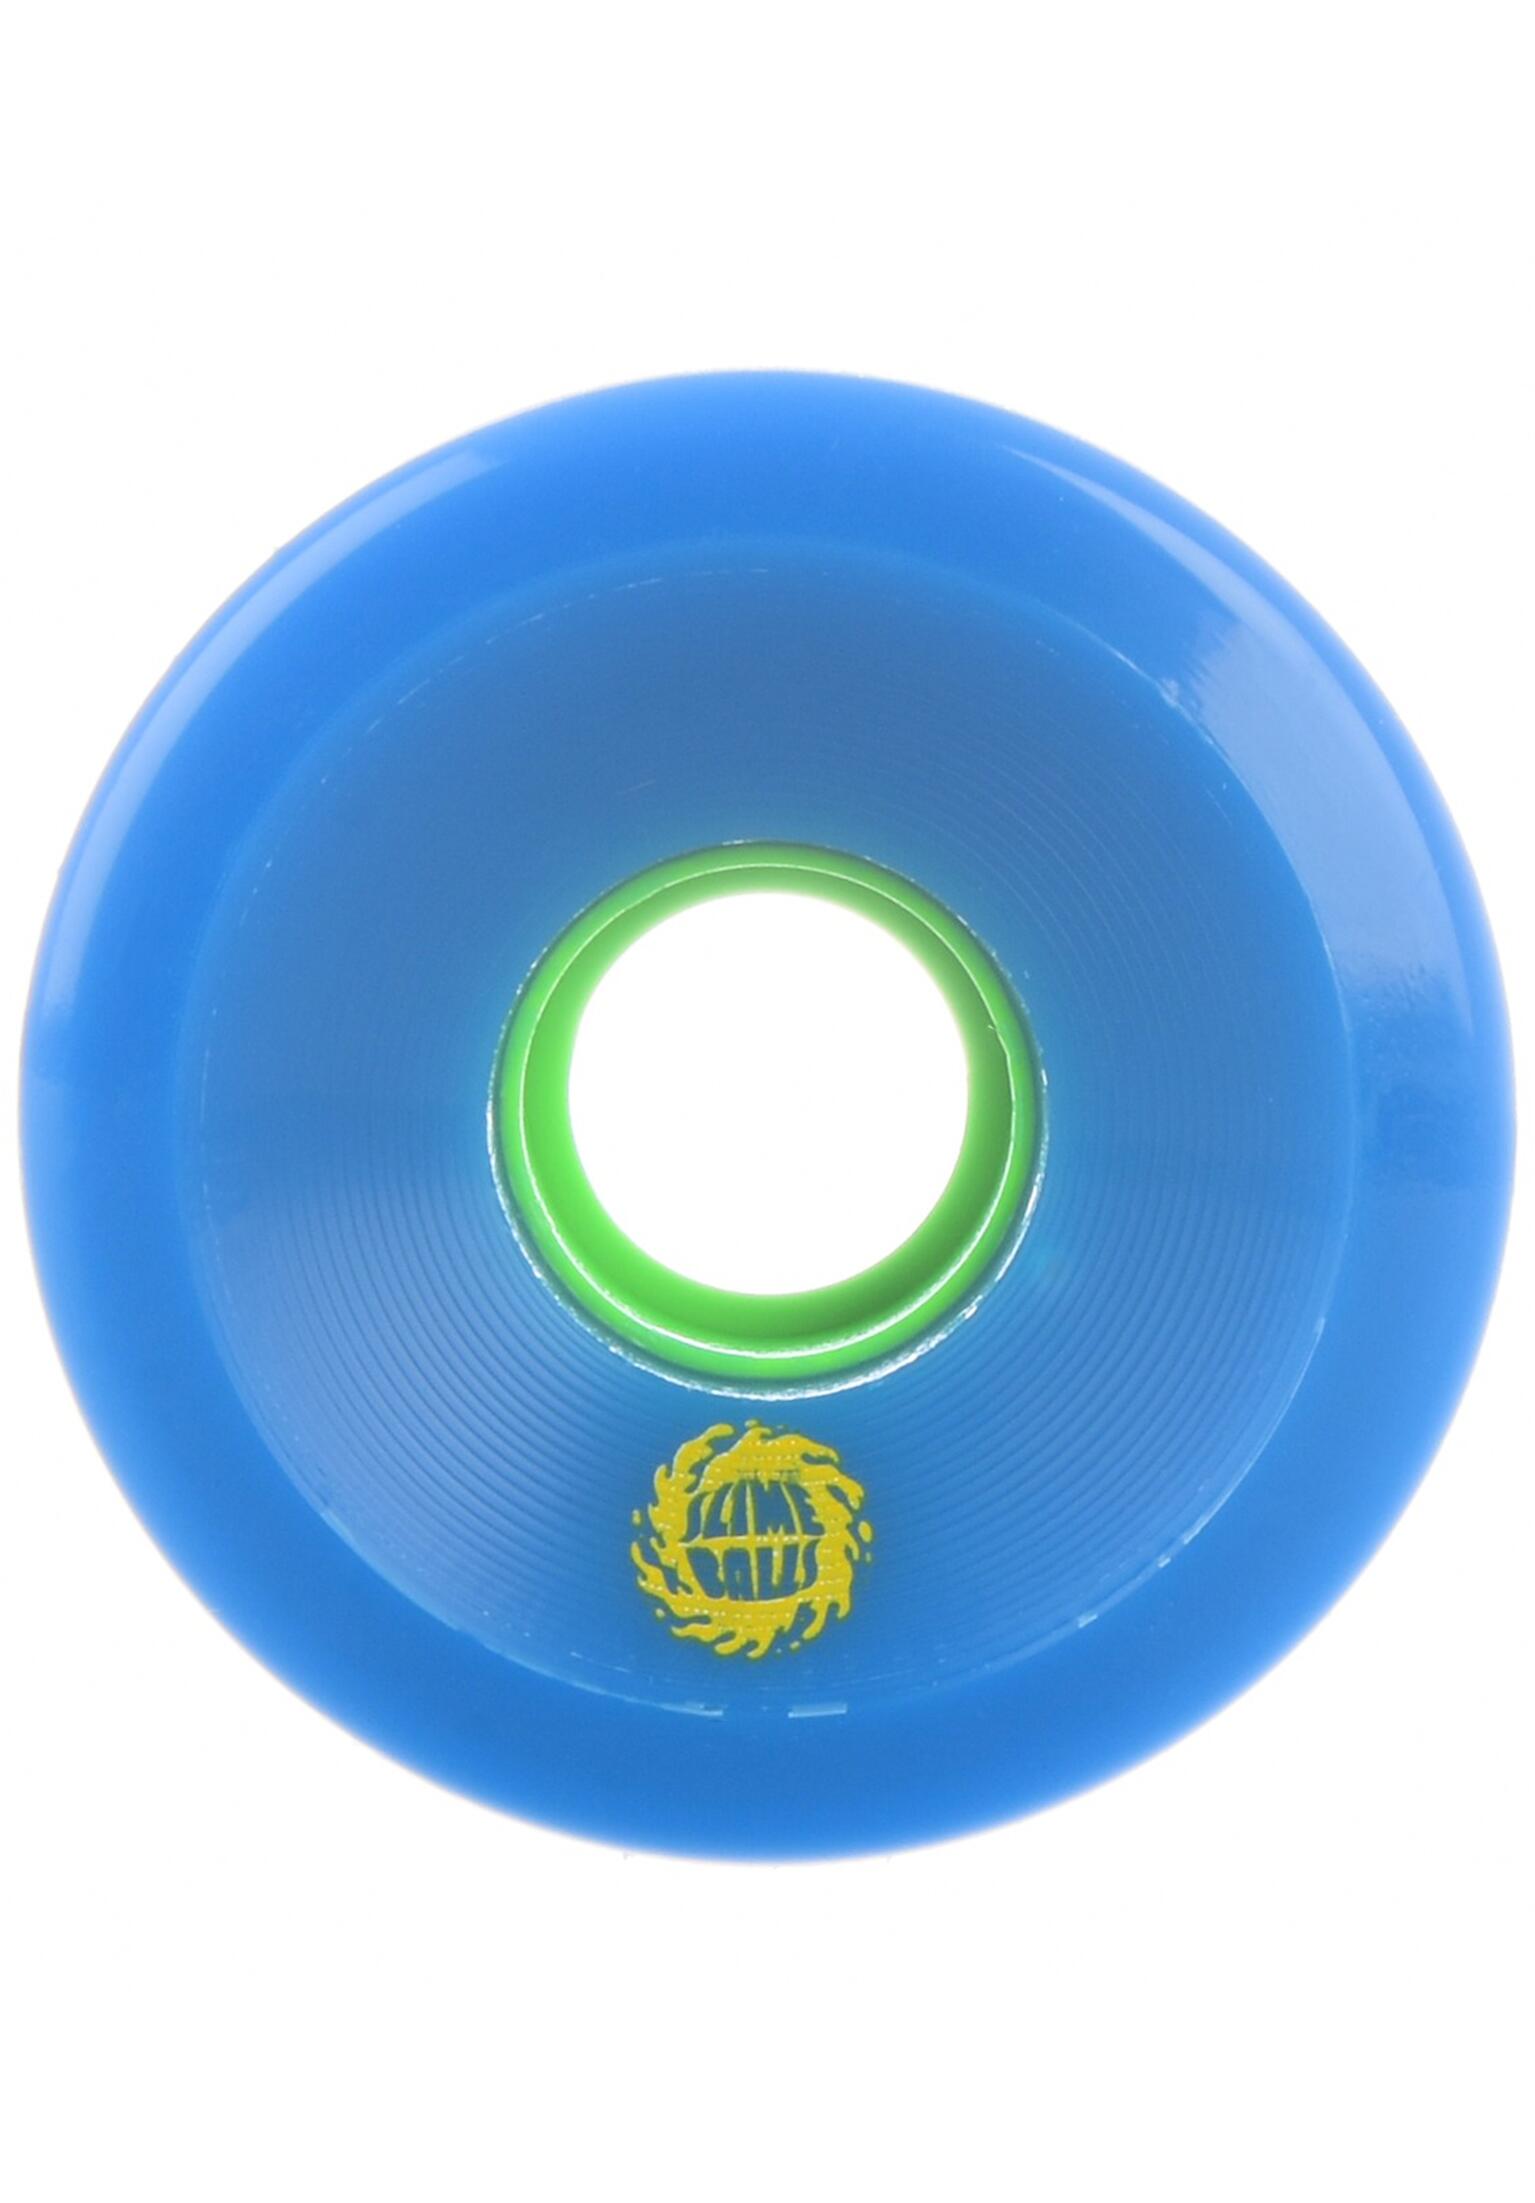 OG Slime 78a Slime Balls 66mm Blue/Green Skateboard Wheels